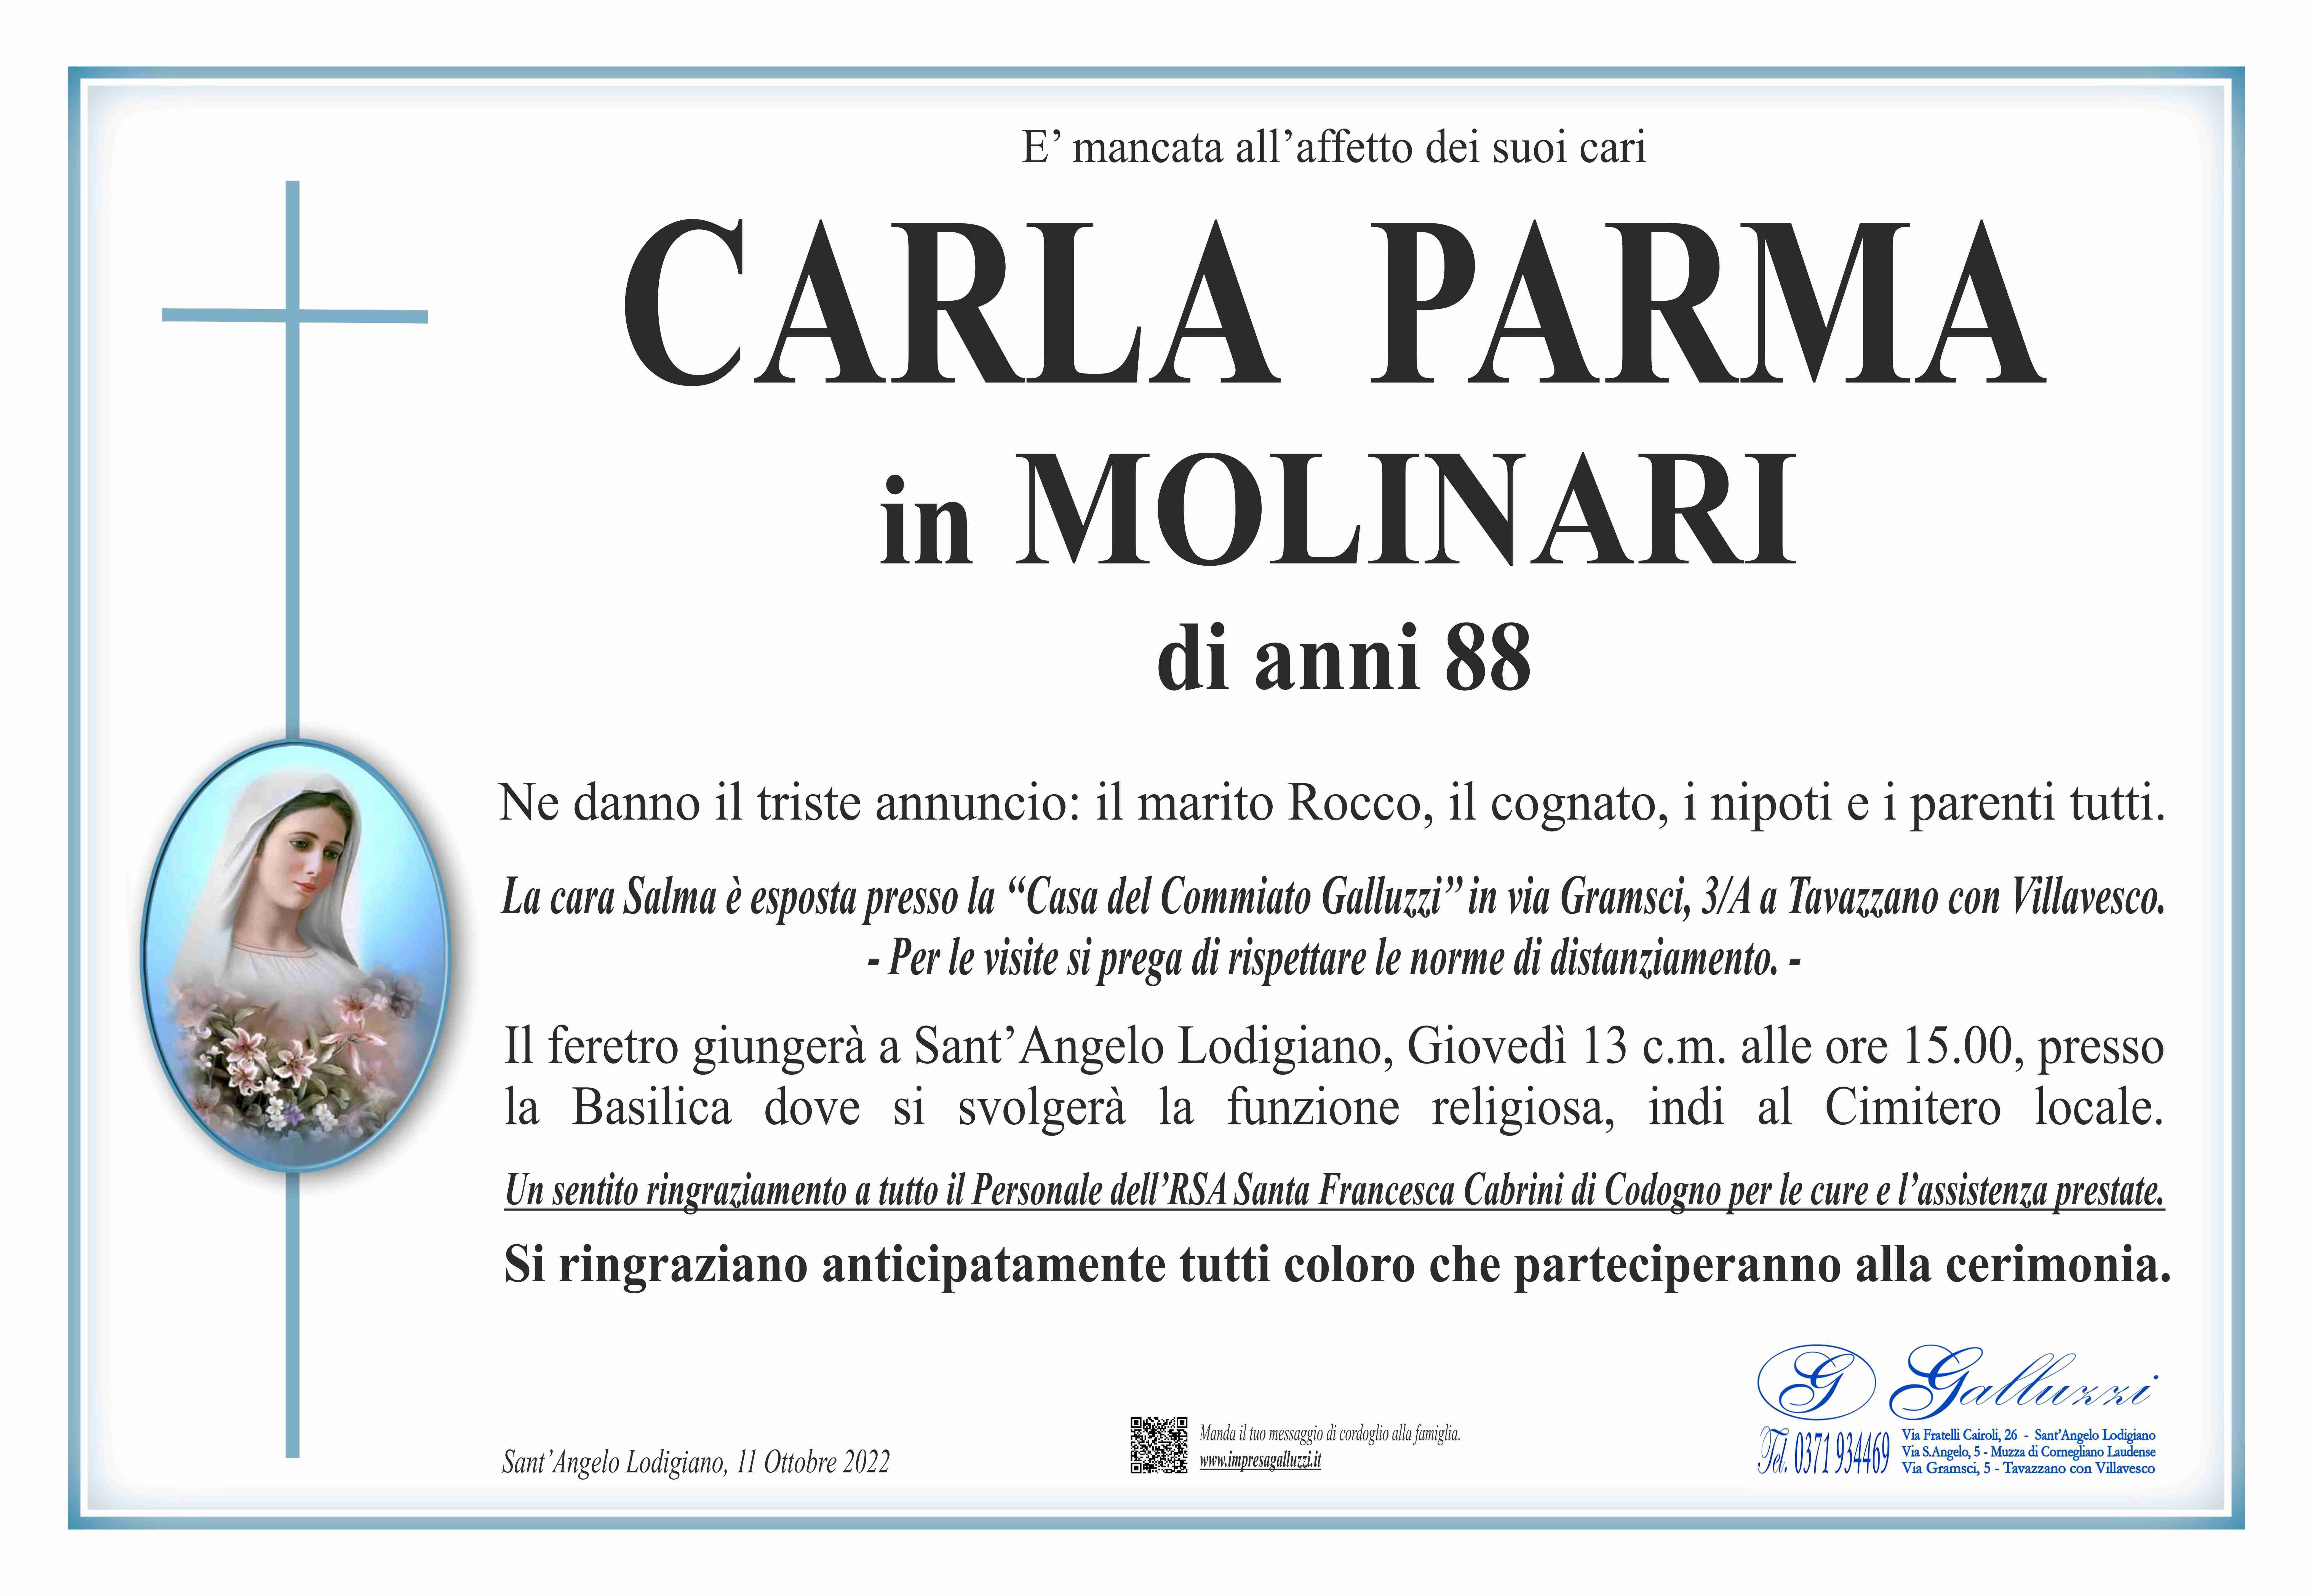 Carla Parma